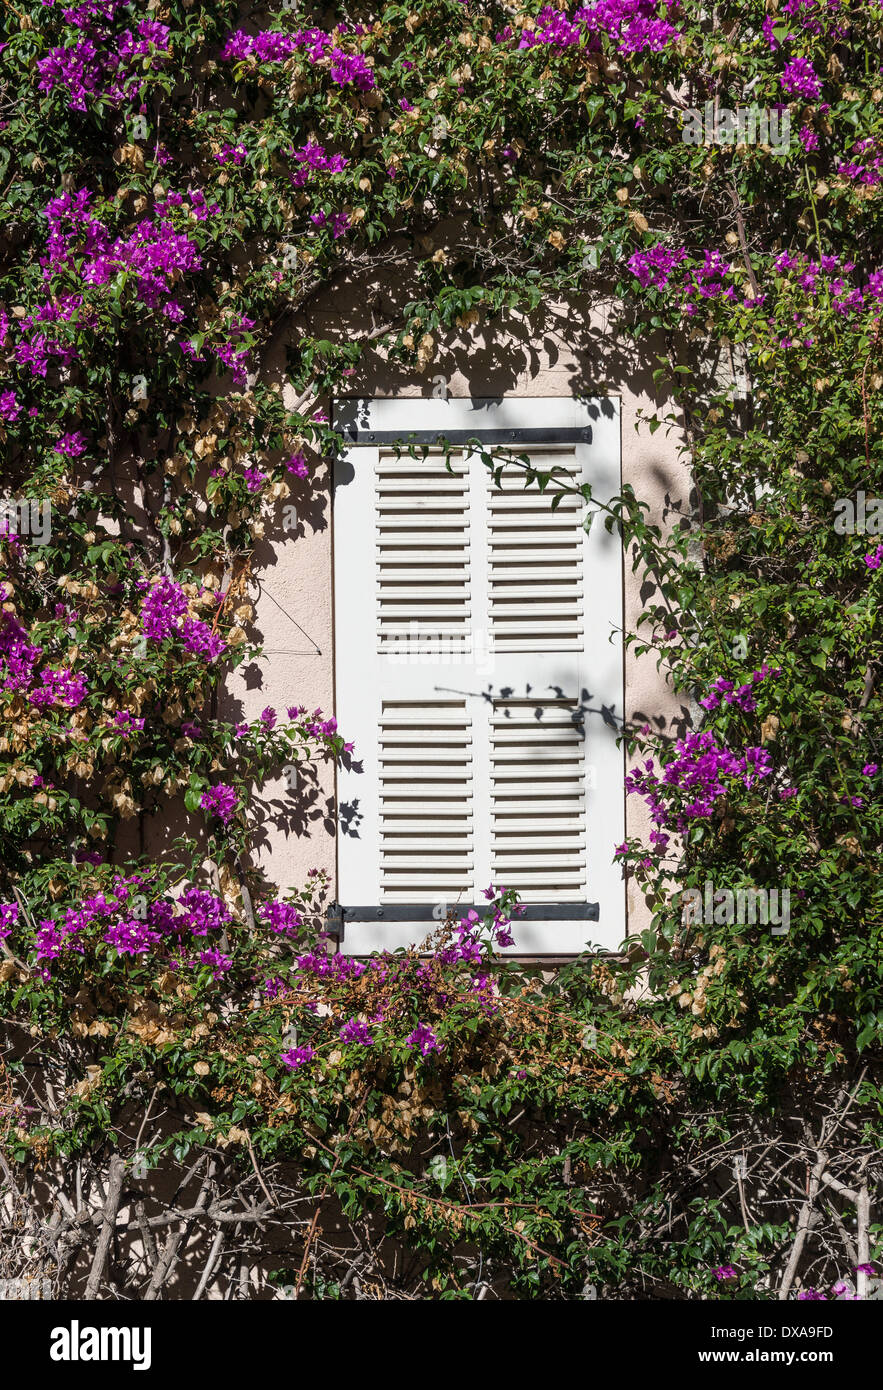 Buganvilla vine images fenêtre à volets, Saint Tropez, France Banque D'Images